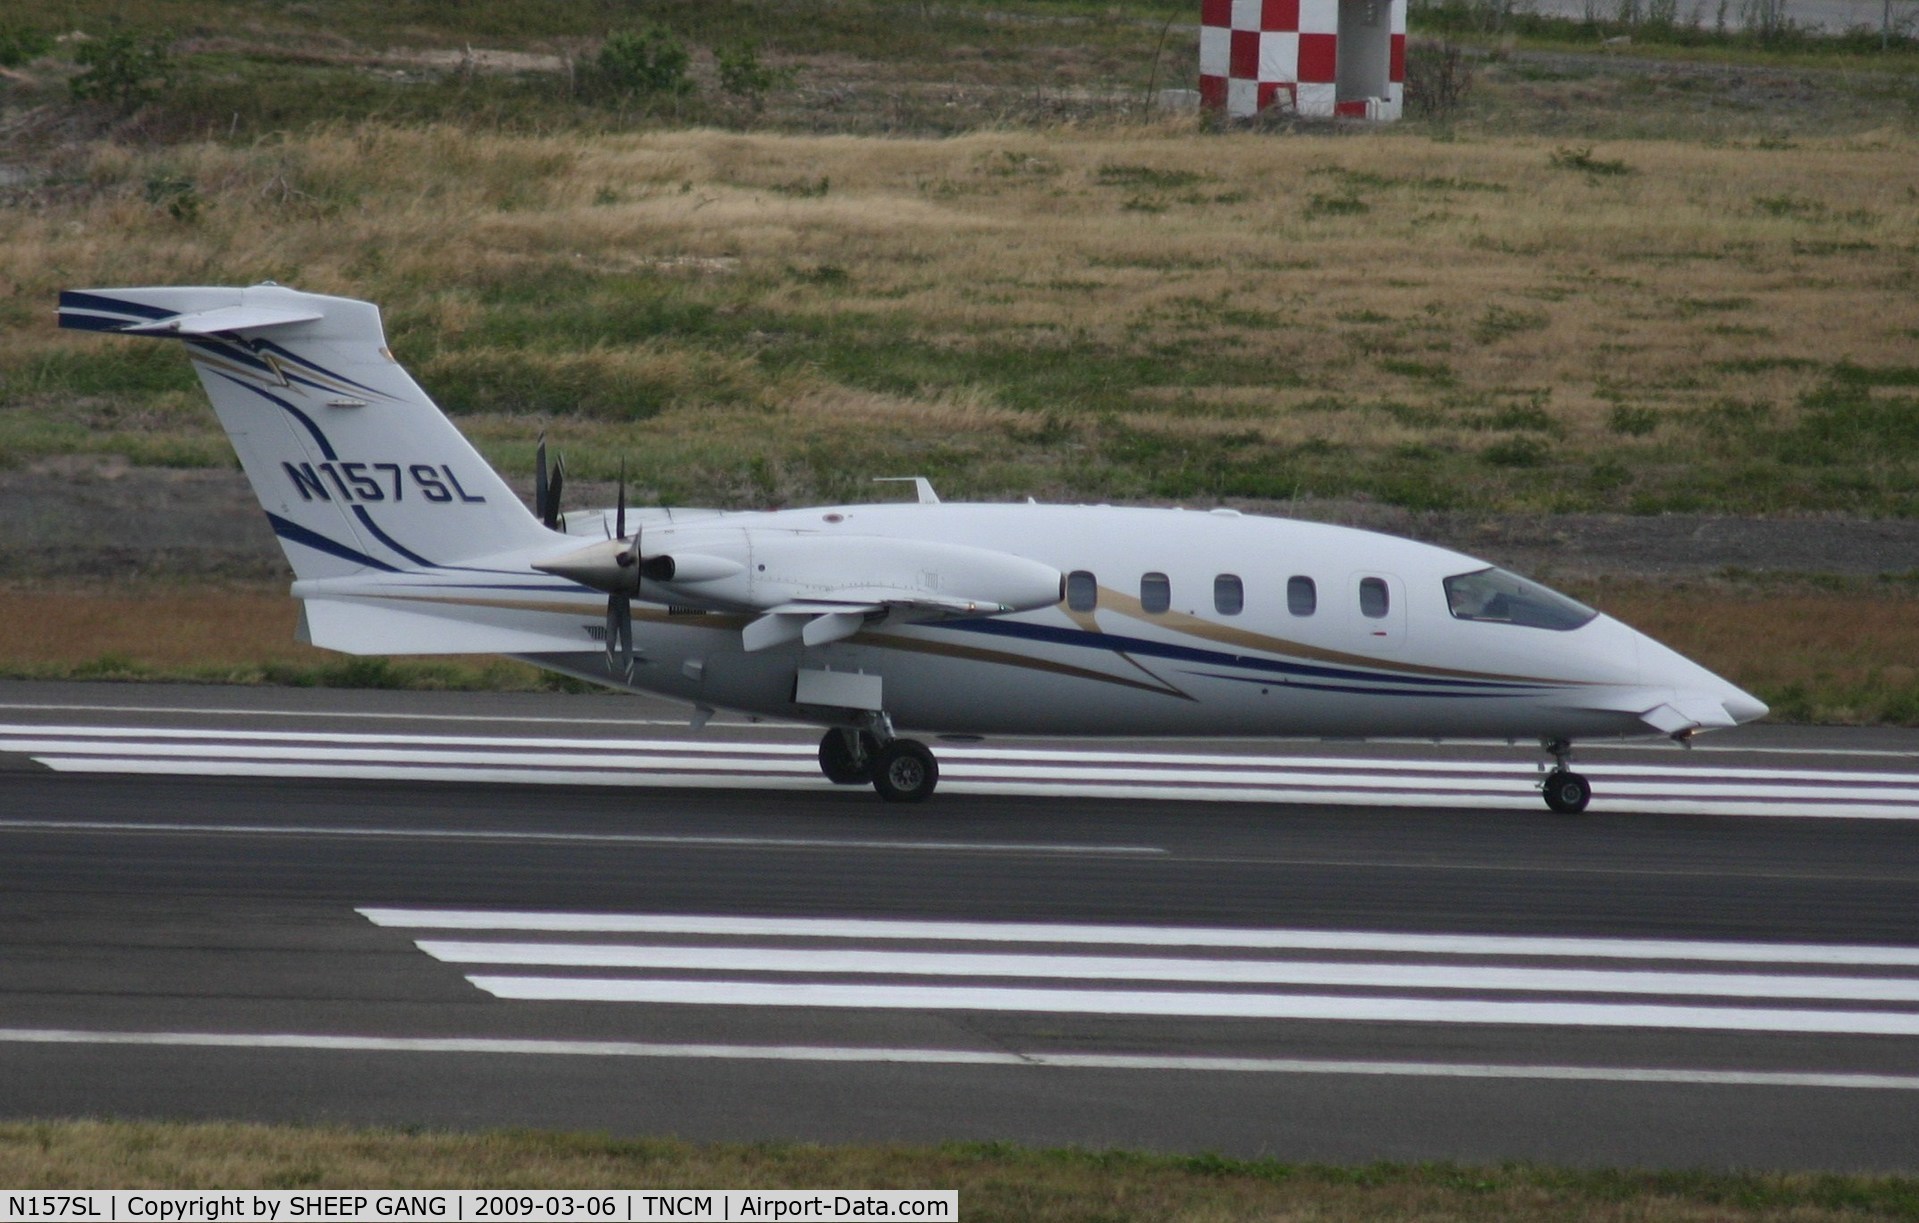 N157SL, 2006 Piaggio P-180 Avanti C/N 1116, taxing runway 10